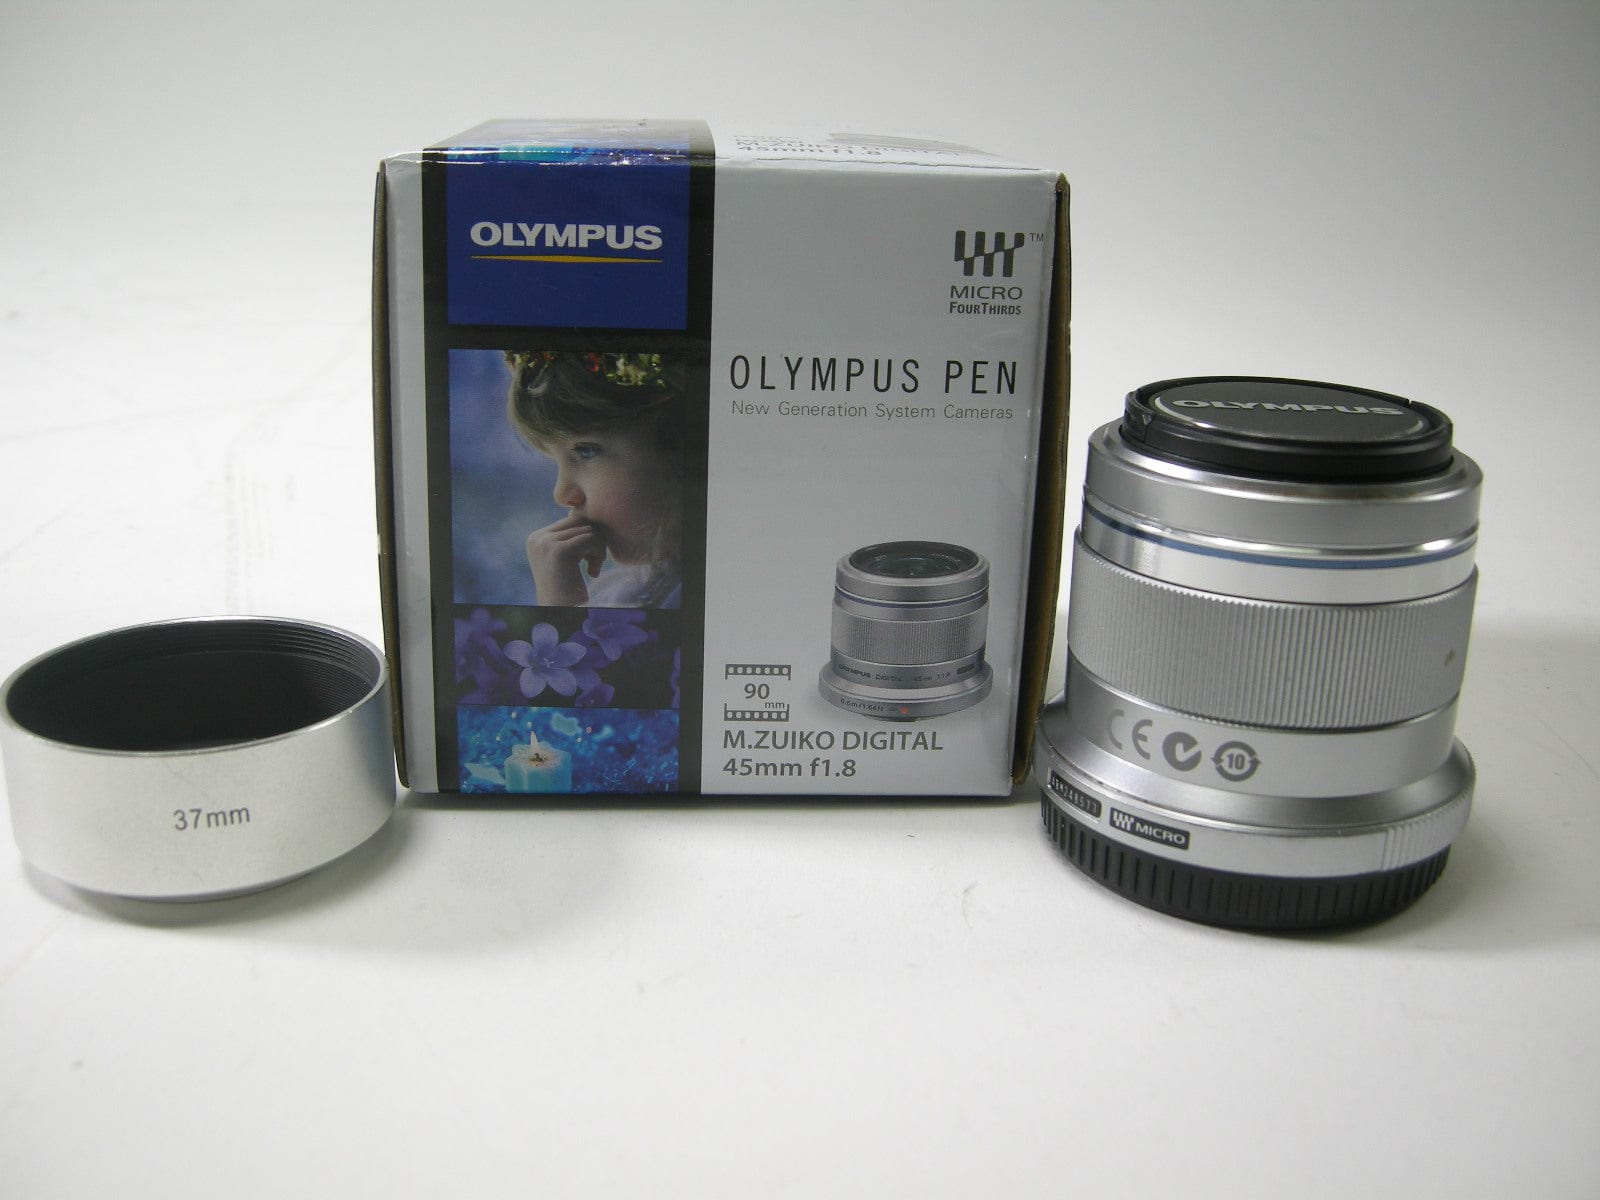 Getalenteerd ik zal sterk zijn Amerikaans voetbal Olympus M. Zuiko Digital 45mm f1.8 Micro 4/3 lens